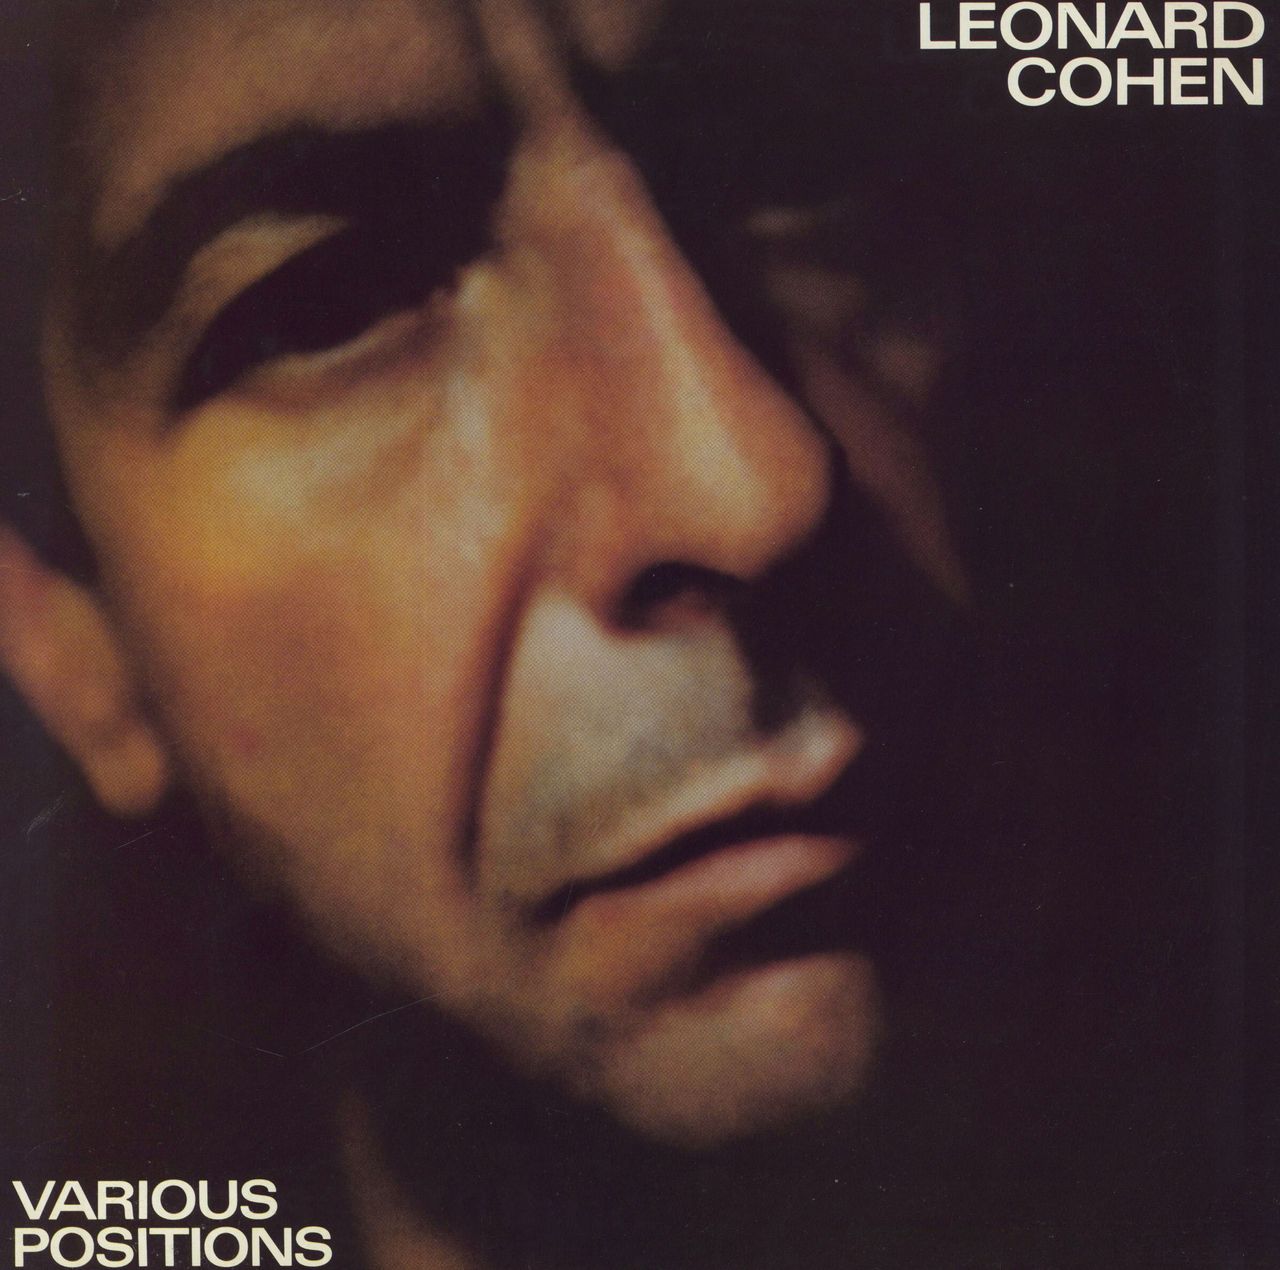 Leonard Cohen Various Positions - sunburst label UK vinyl LP album (LP record) 26222